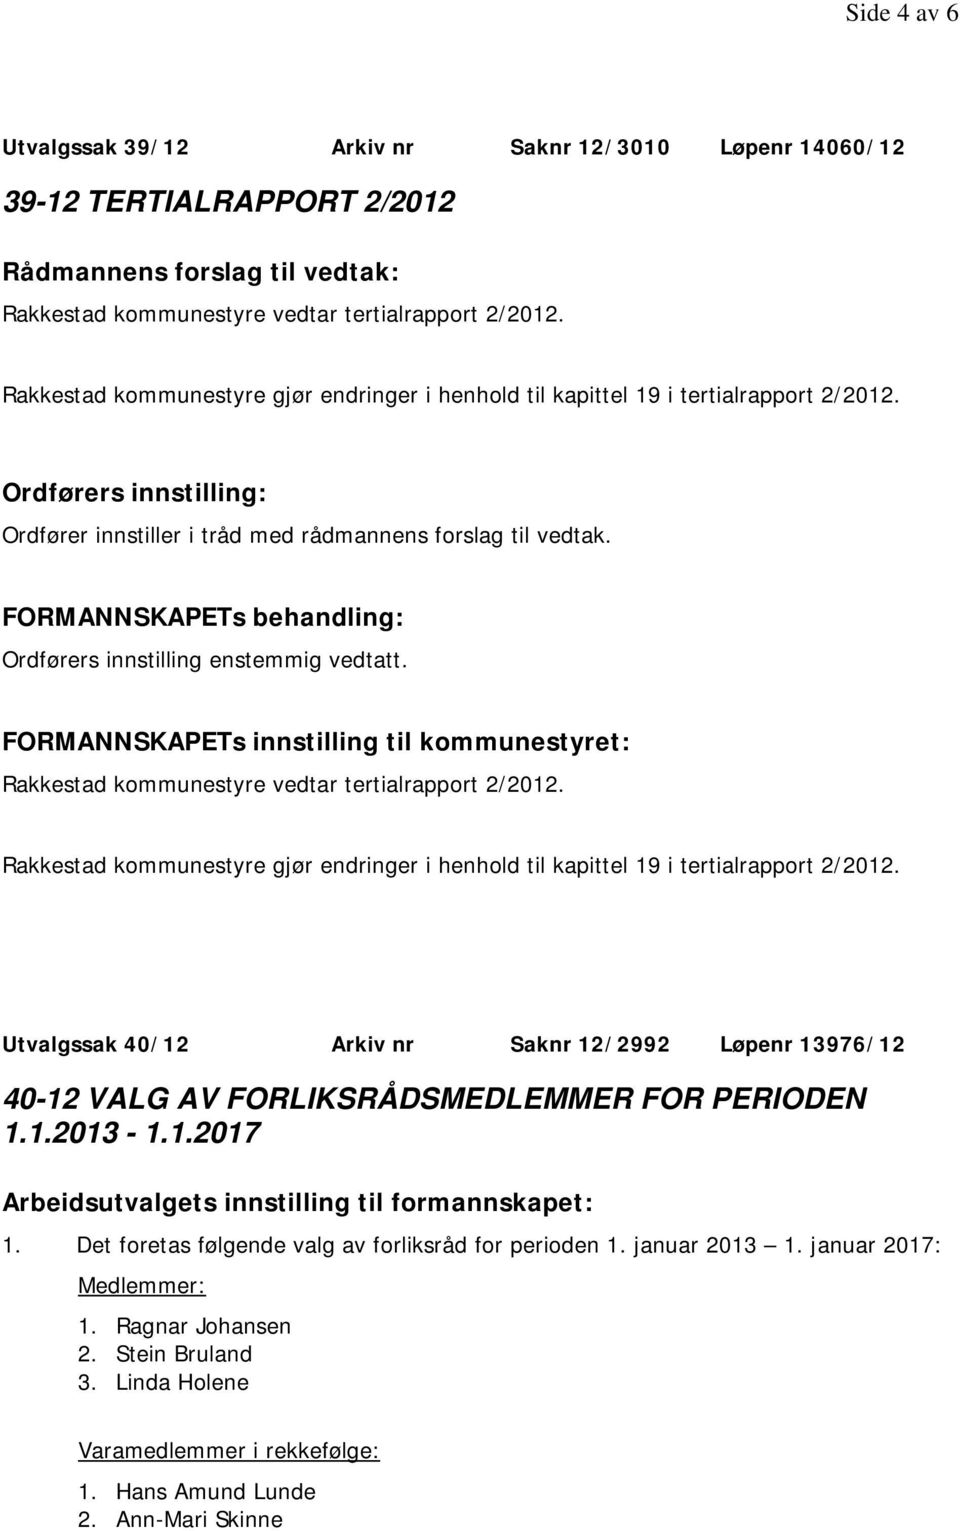 Ordførers innstilling enstemmig vedtatt. FORMANNSKAPETs innstilling til kommunestyret: Rakkestad kommunestyre vedtar tertialrapport 2/2012.